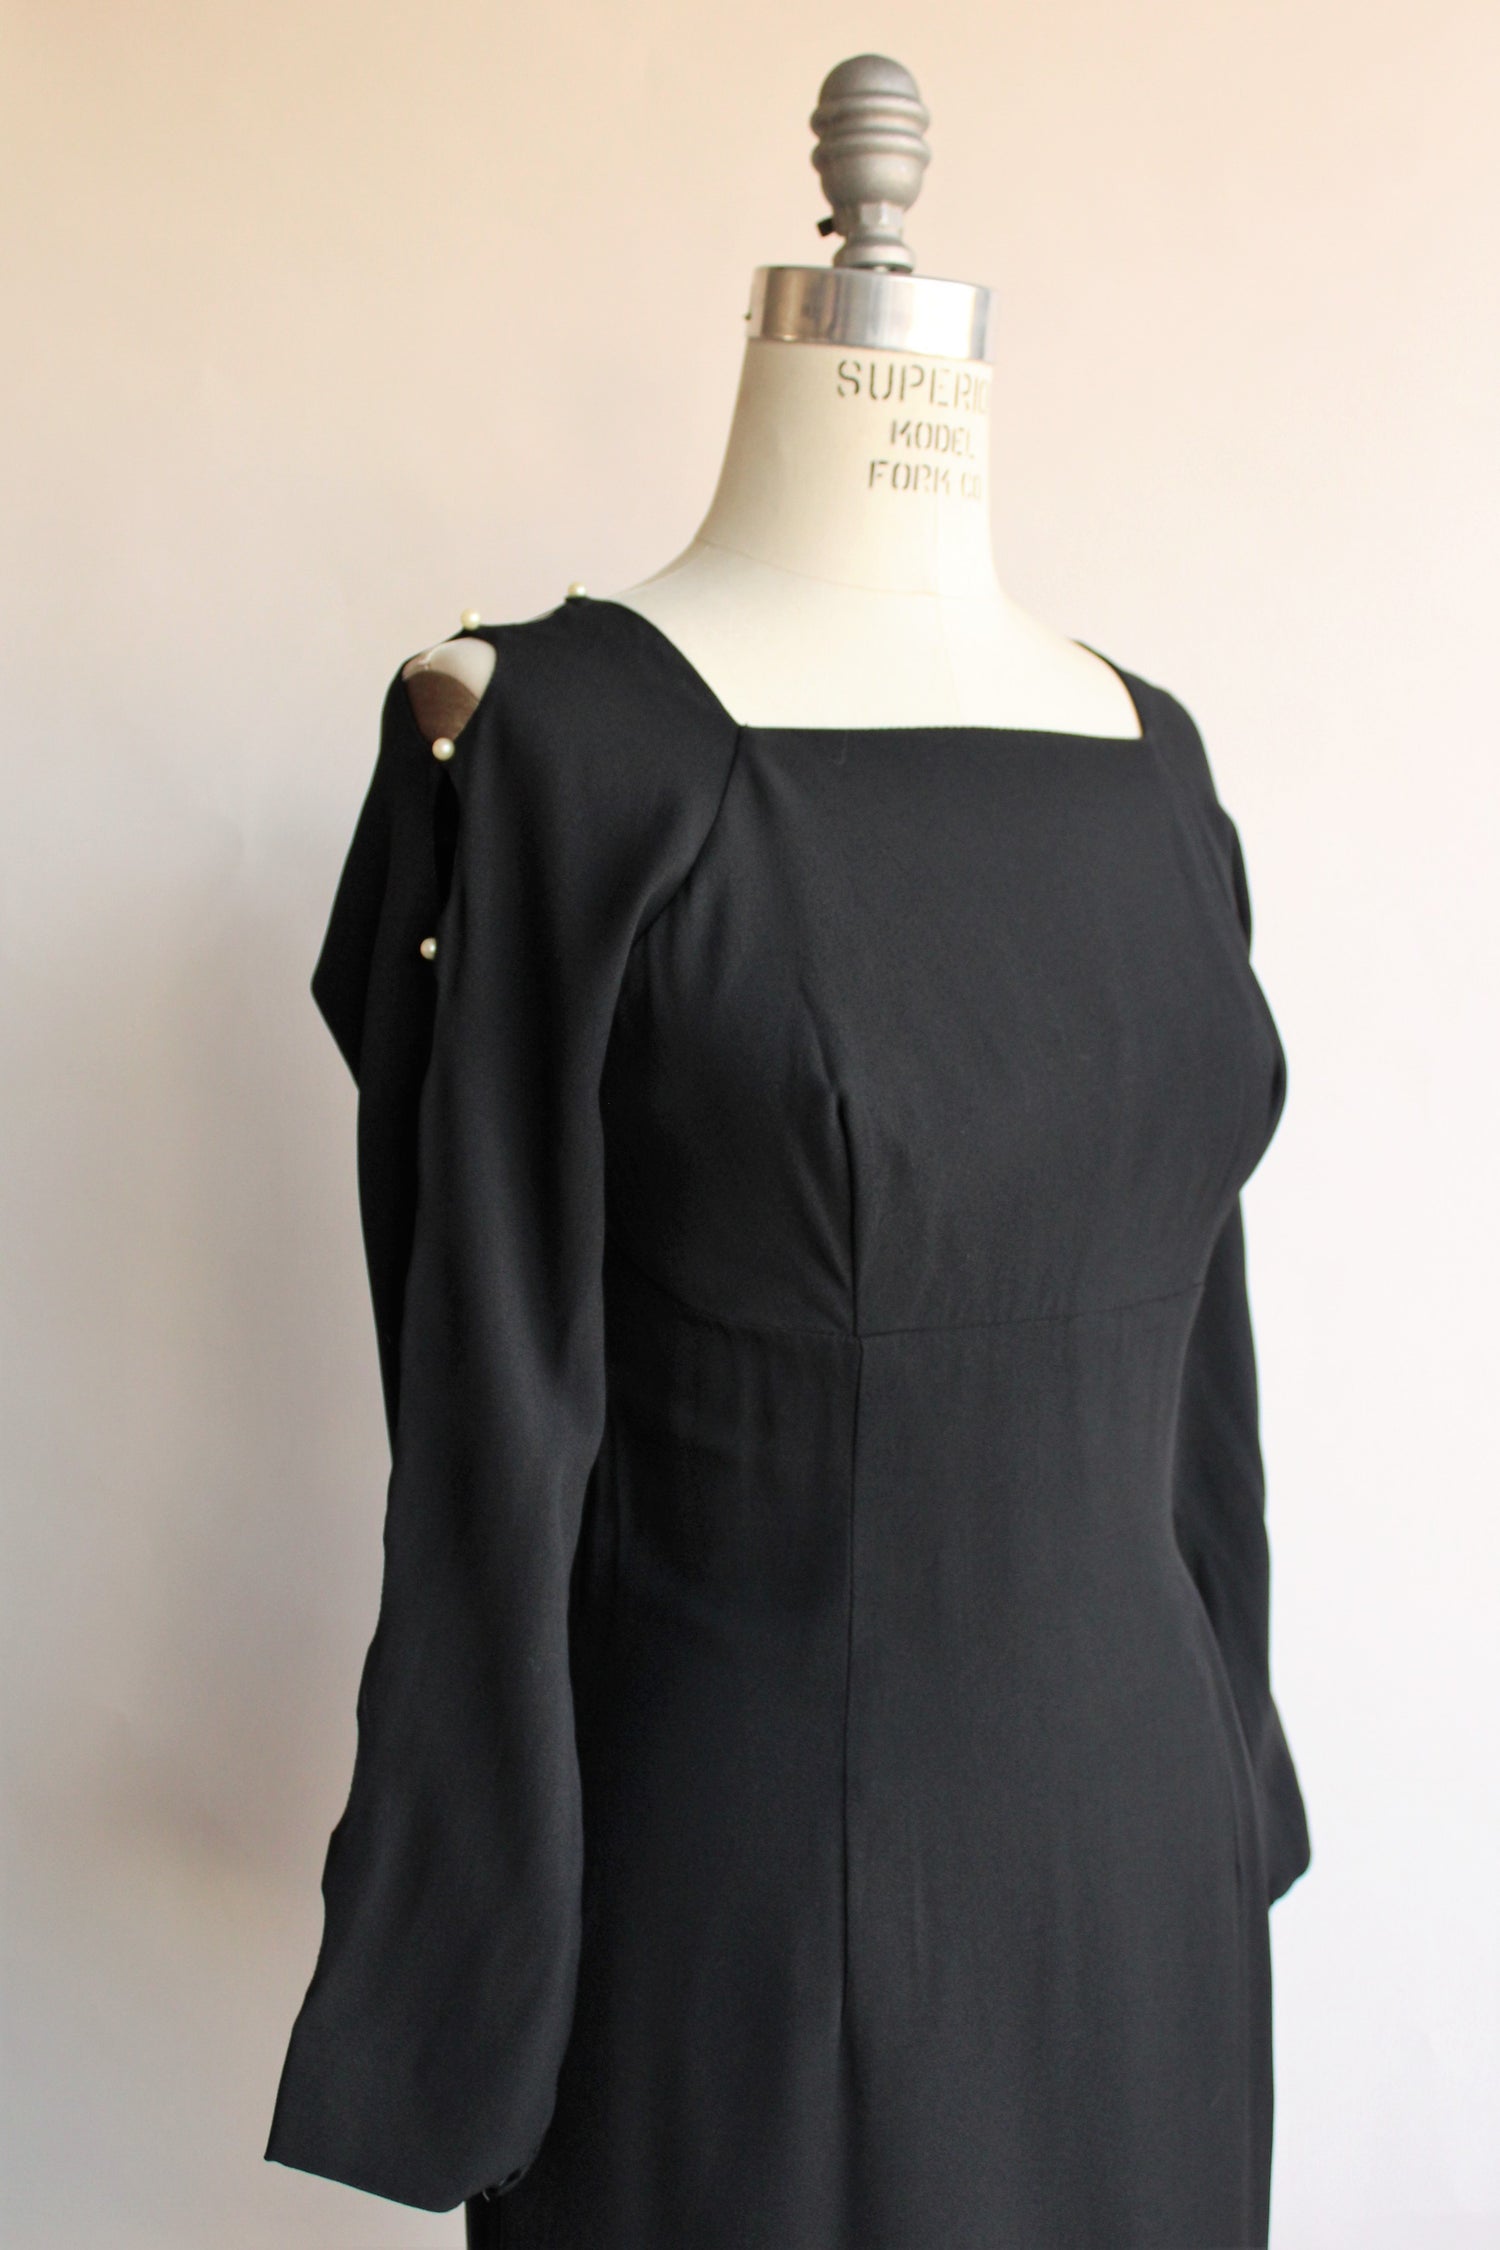 Vintage 1960s Black Dress With Cold Shoulder And Pearl Details